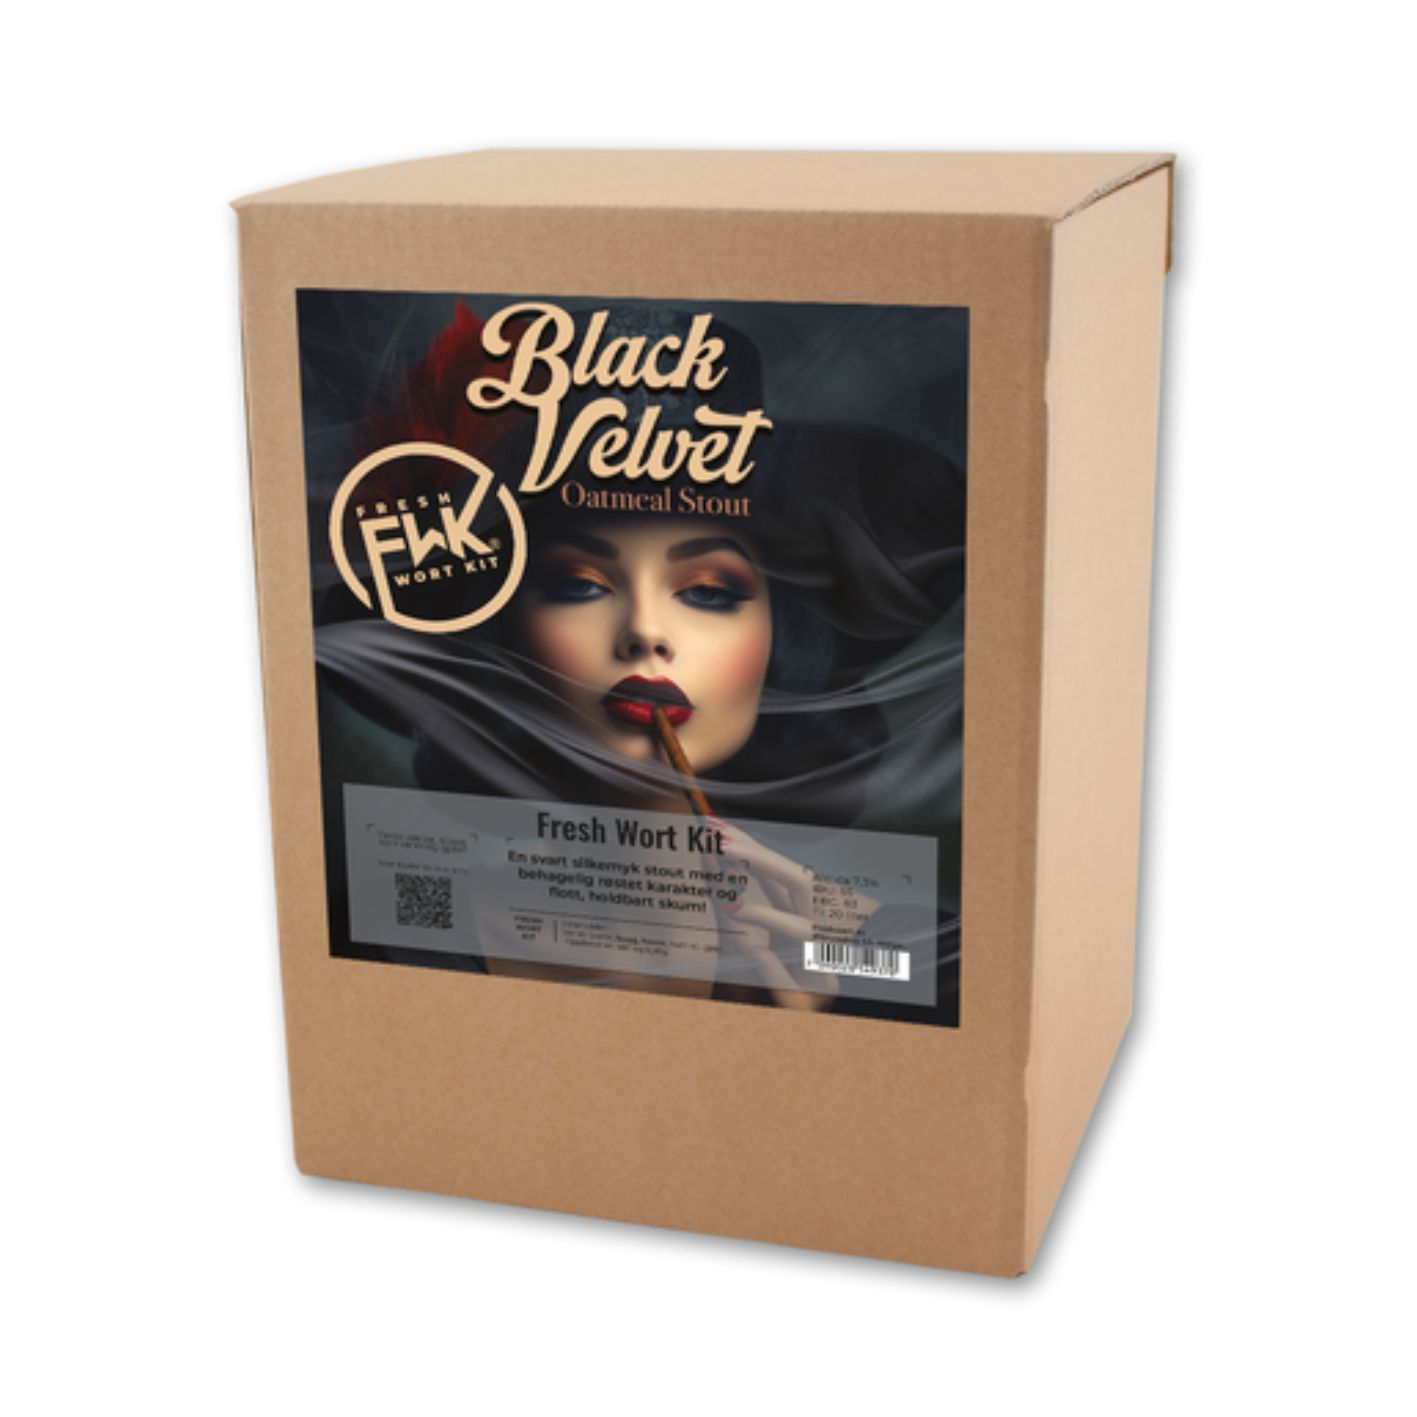 Black Velvet Oatmeal stout Fresh W.